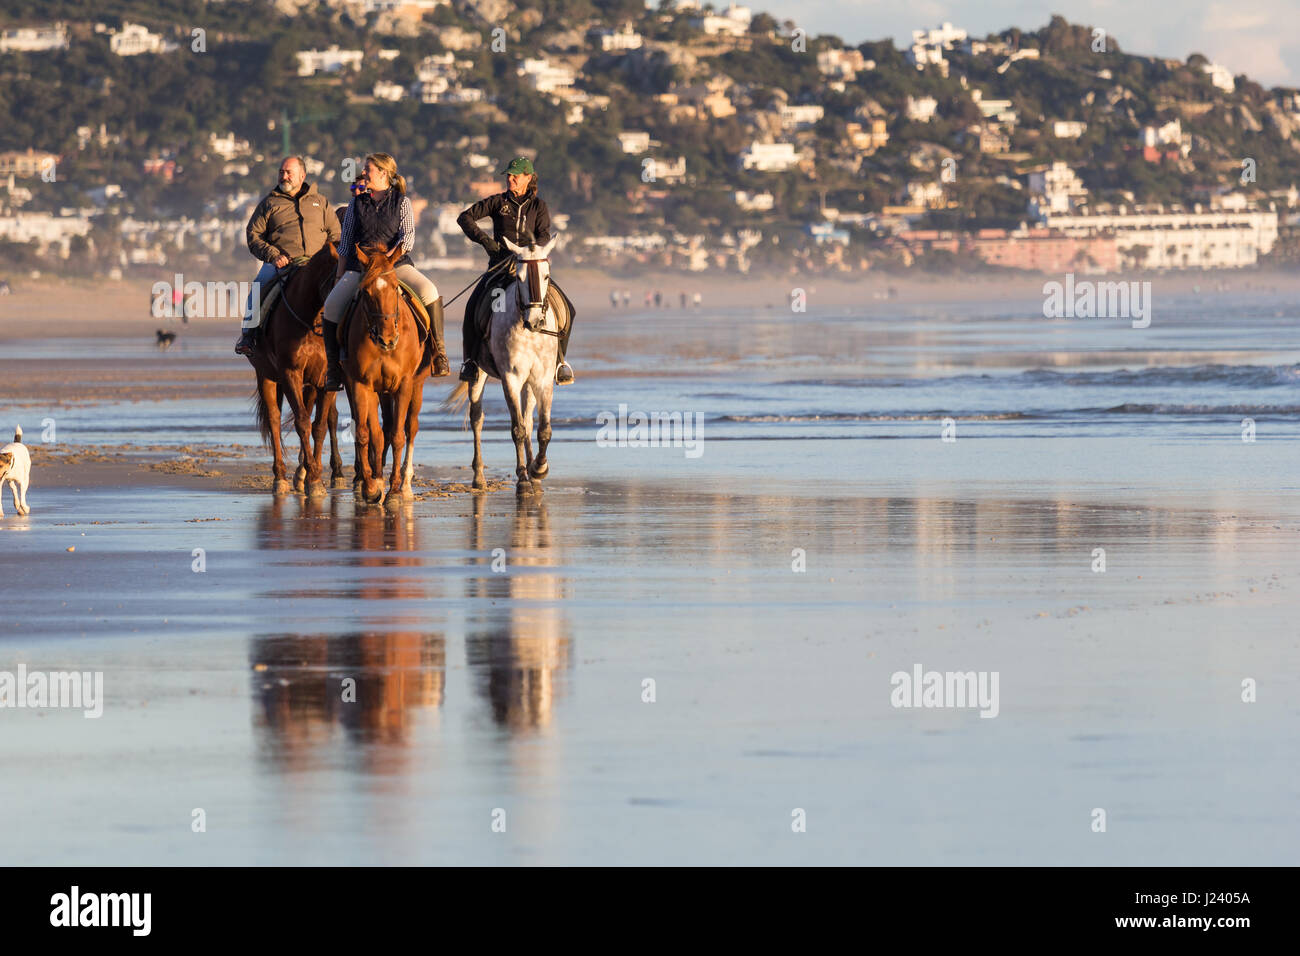 ZAHARA DE LOS ATUNES, CADIZ, SPAIN - MARCH 20, 2016: People having fun riding horses on the beach at Zahara de los Atunes, Cadiz, Andalusia, Spain Stock Photo